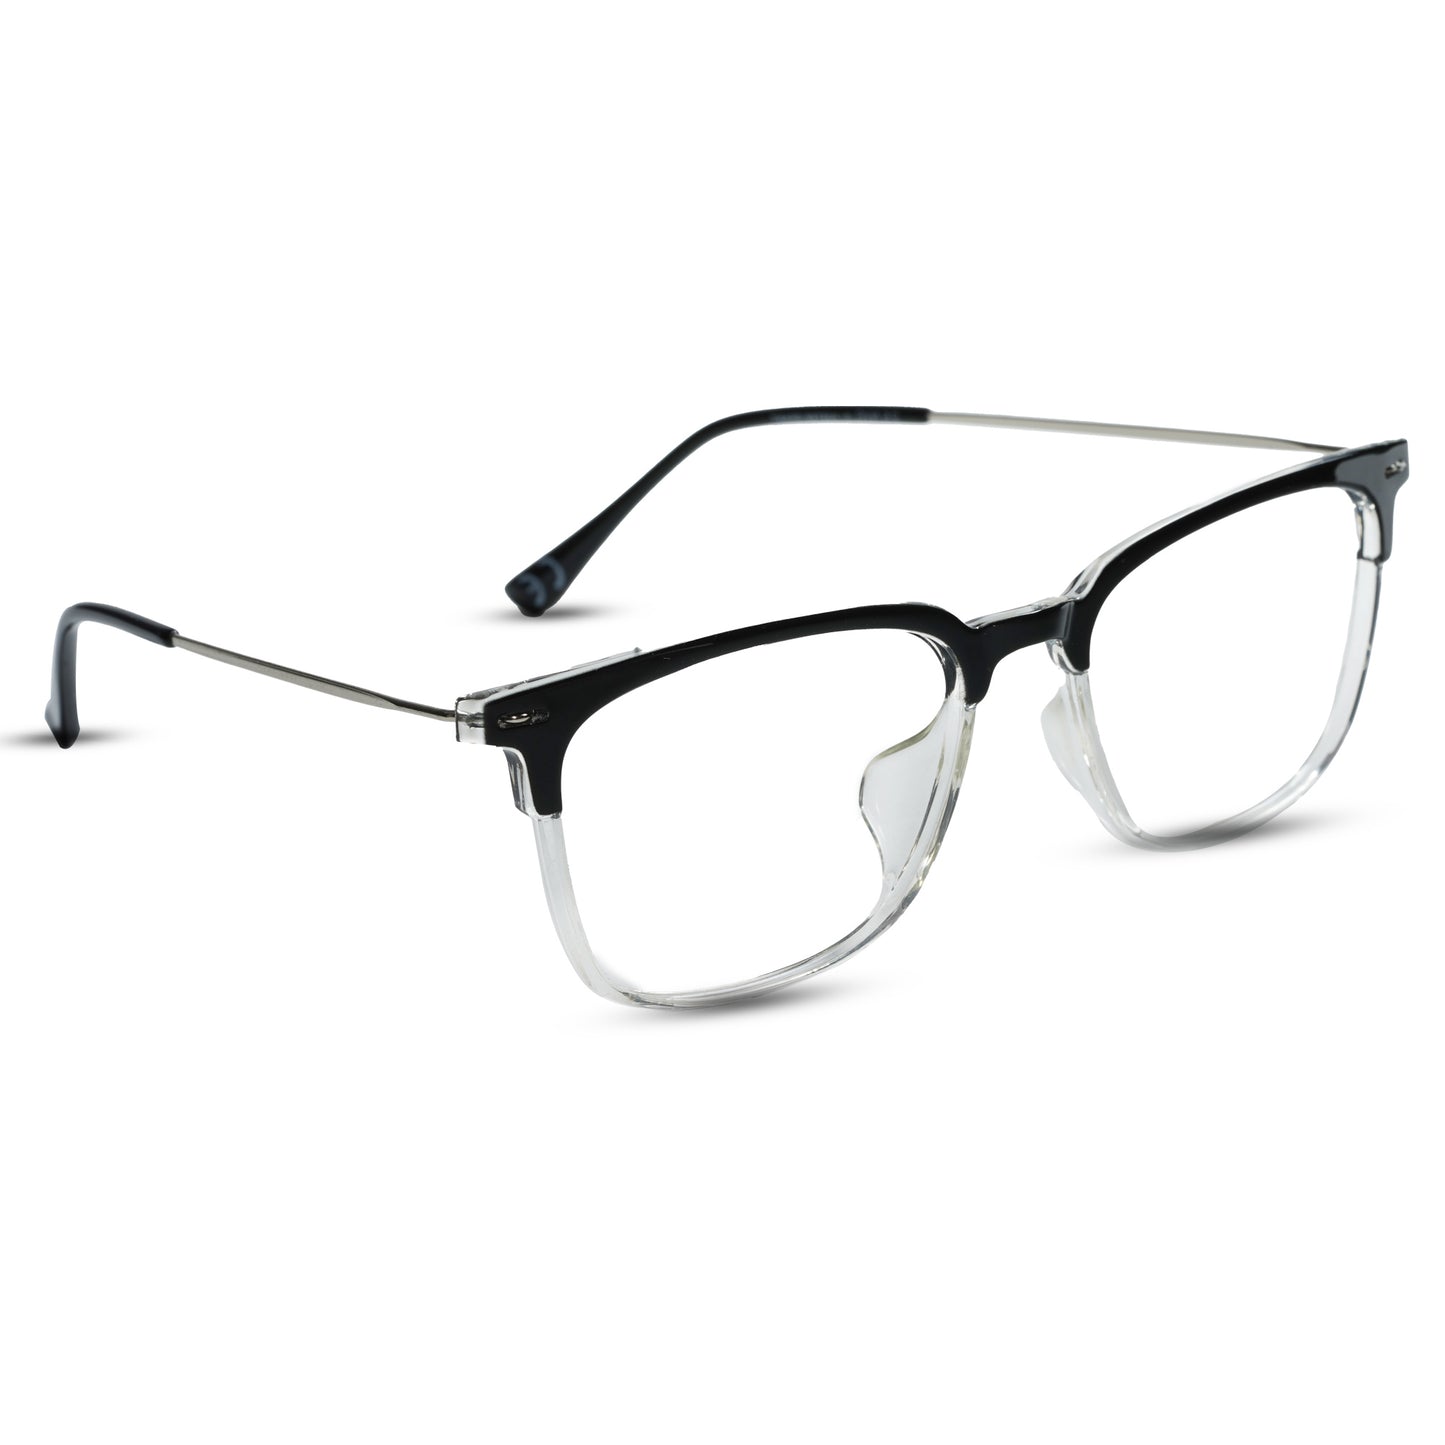 2.5 NVG Computer Glasses Black Transparent Square Eyeglasses